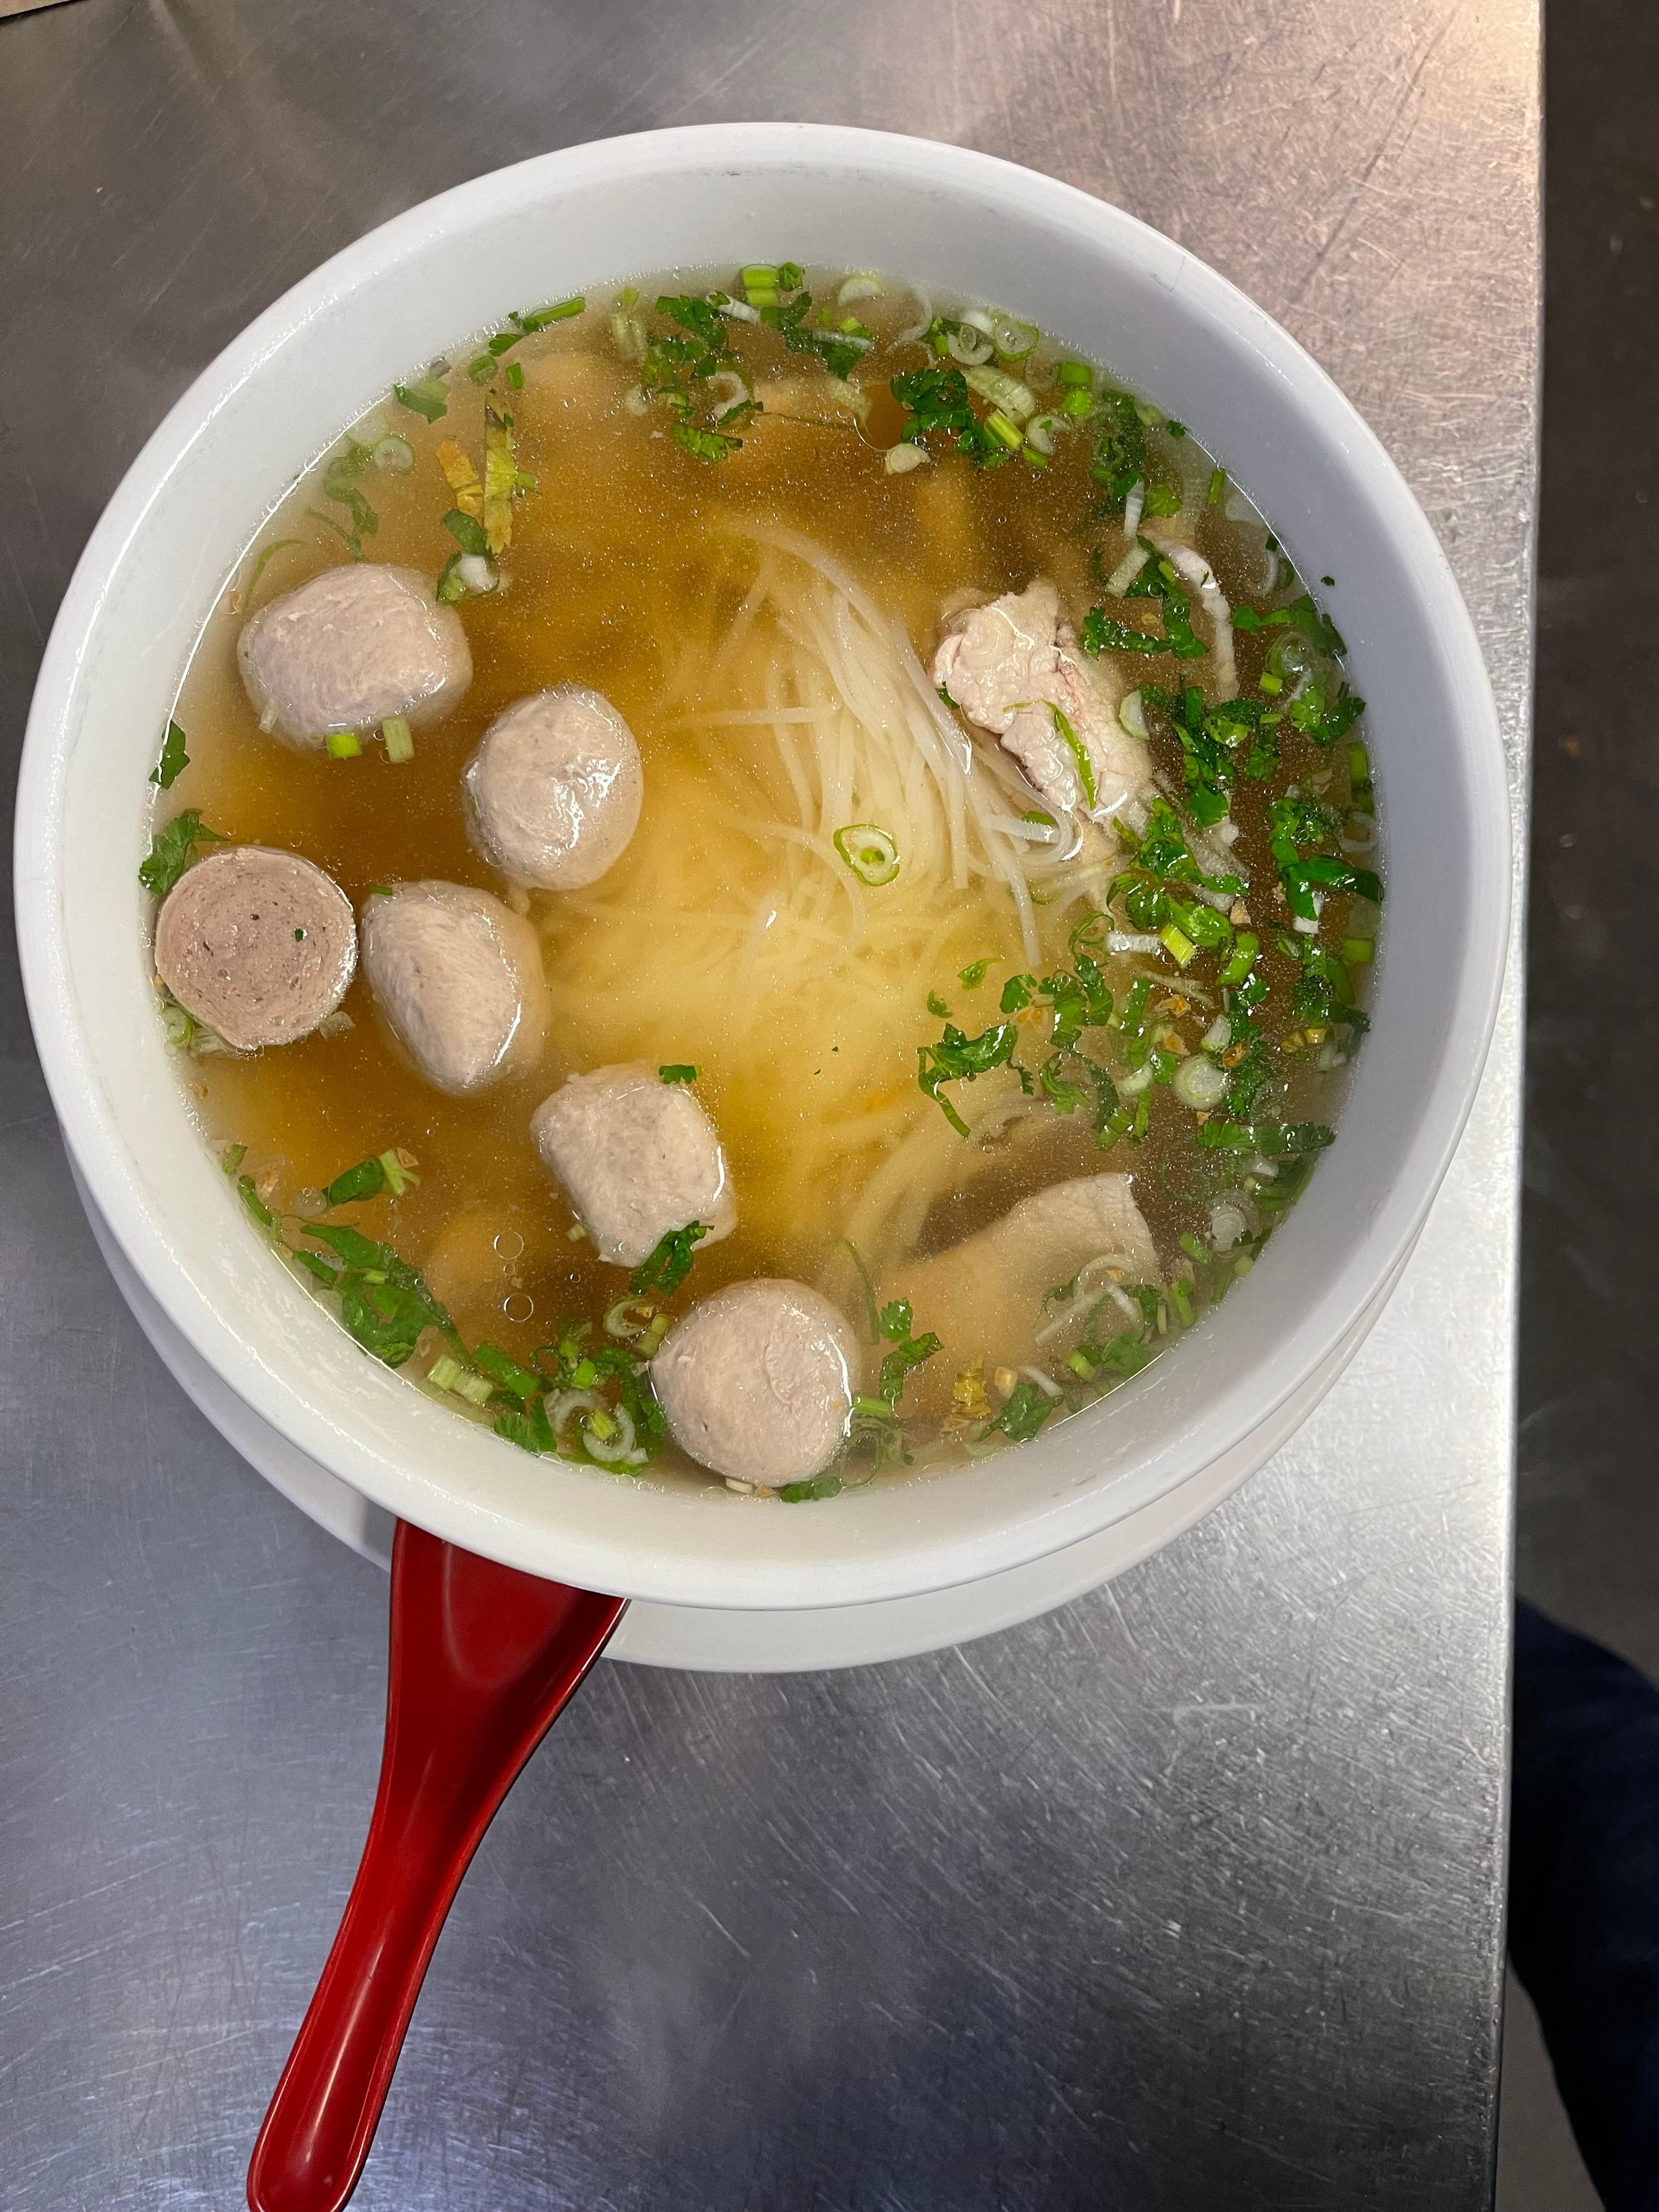 Rain's Beef Noodle Soup (Pho)